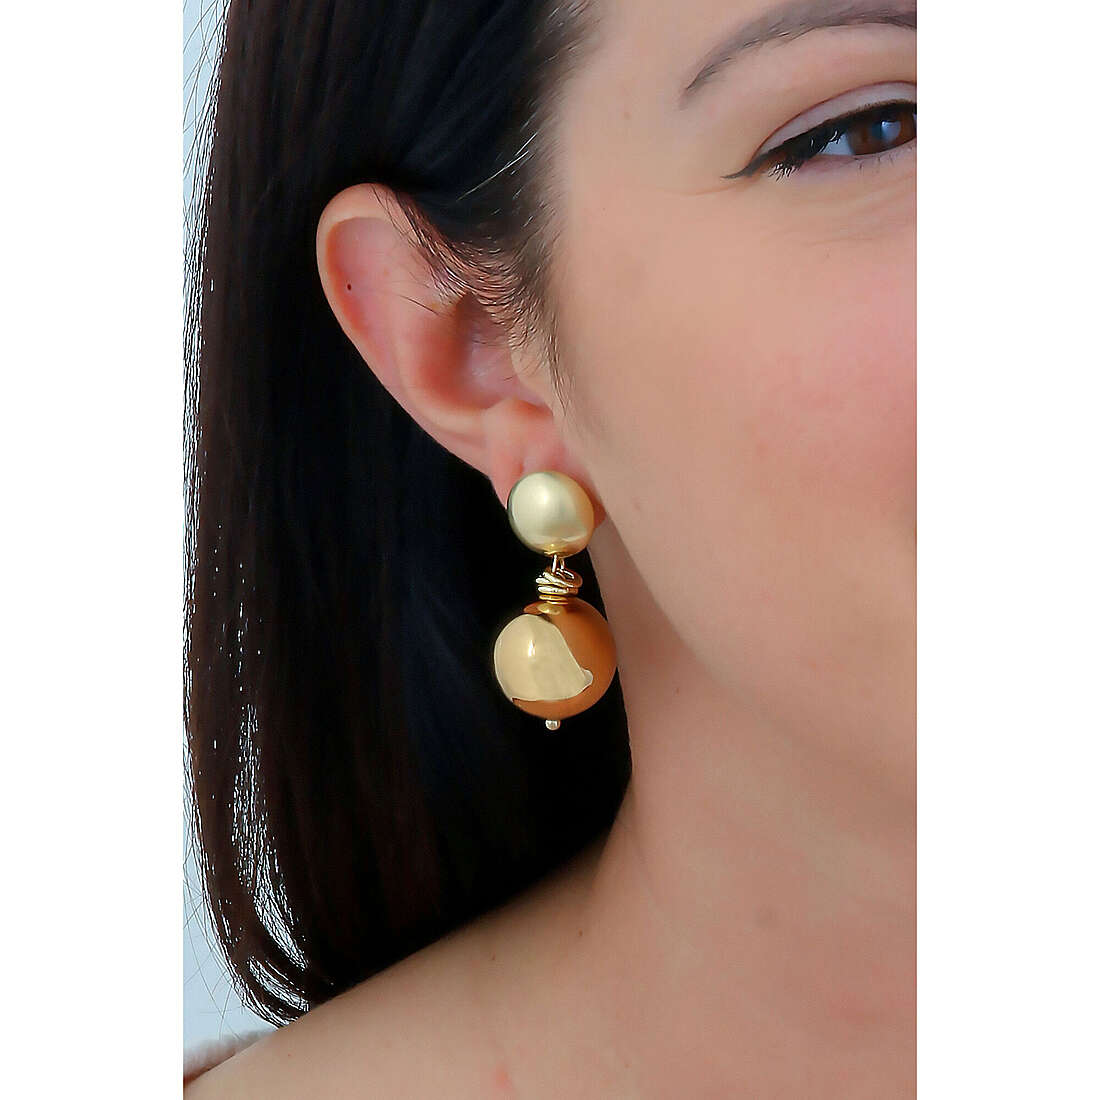 Unoaerre Fashion Jewellery boucles d'oreille Limited Edition femme 1AR1813 Je porte